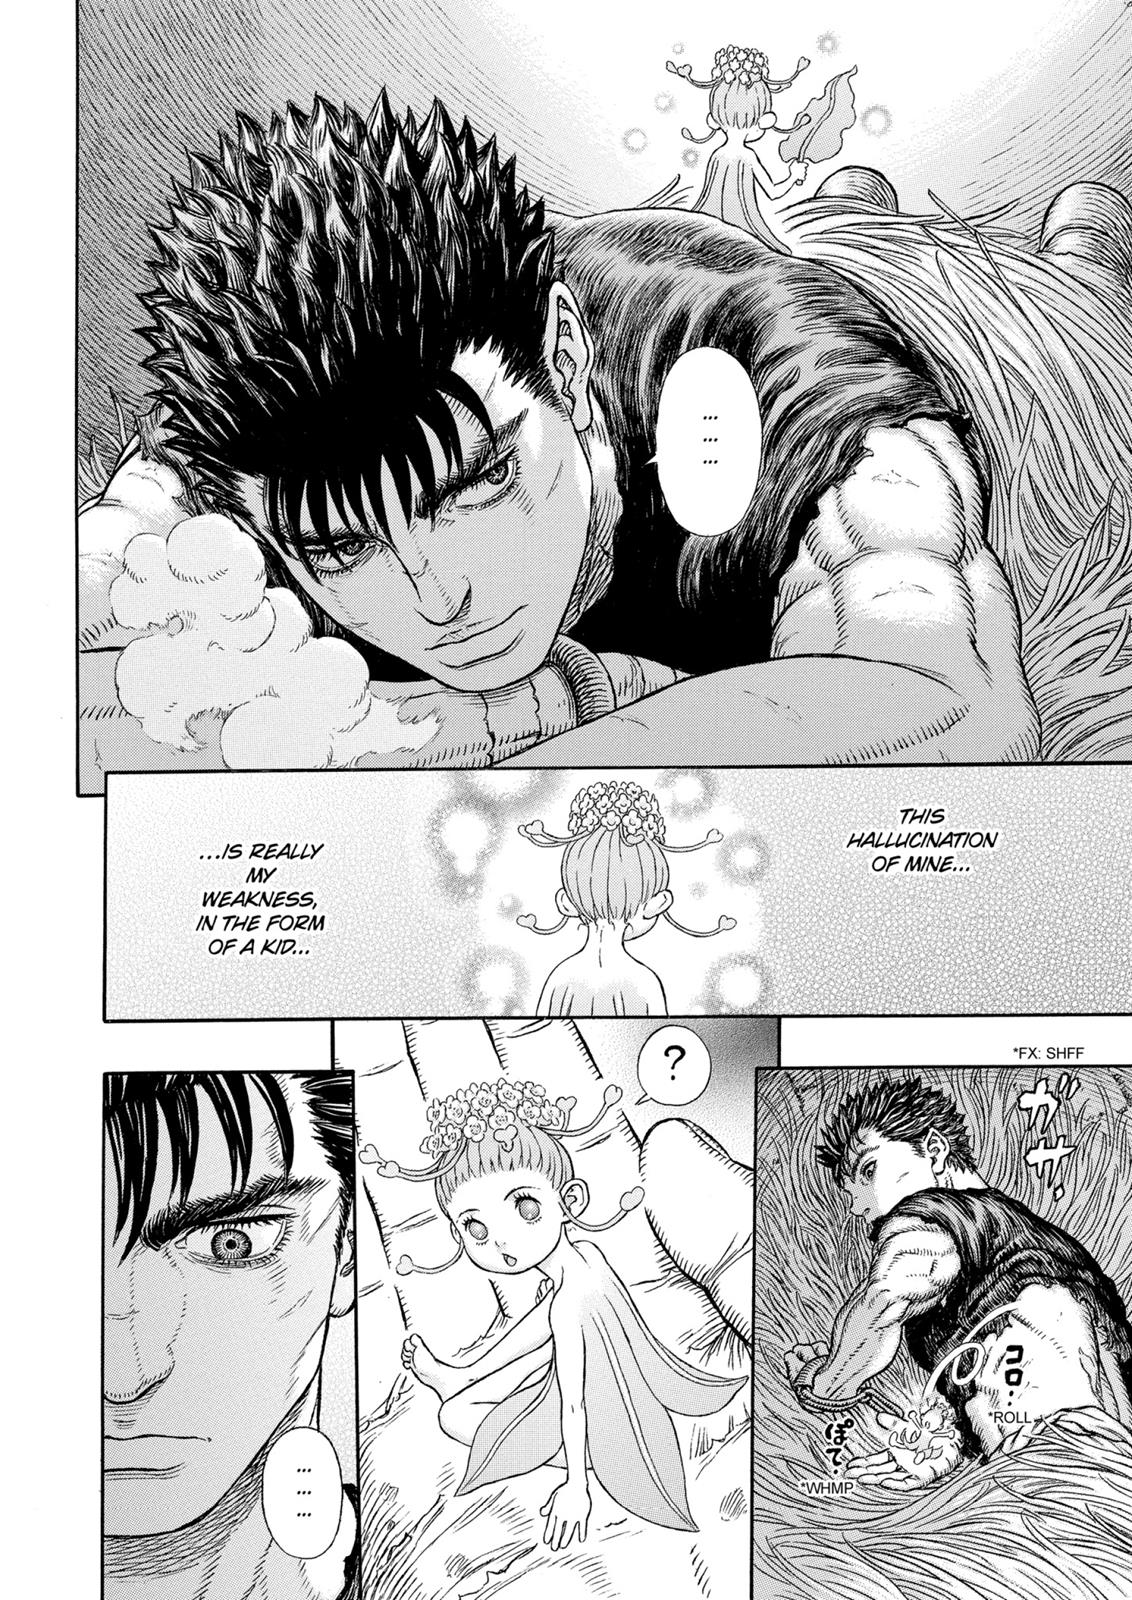 Berserk Manga Chapter 330 image 15